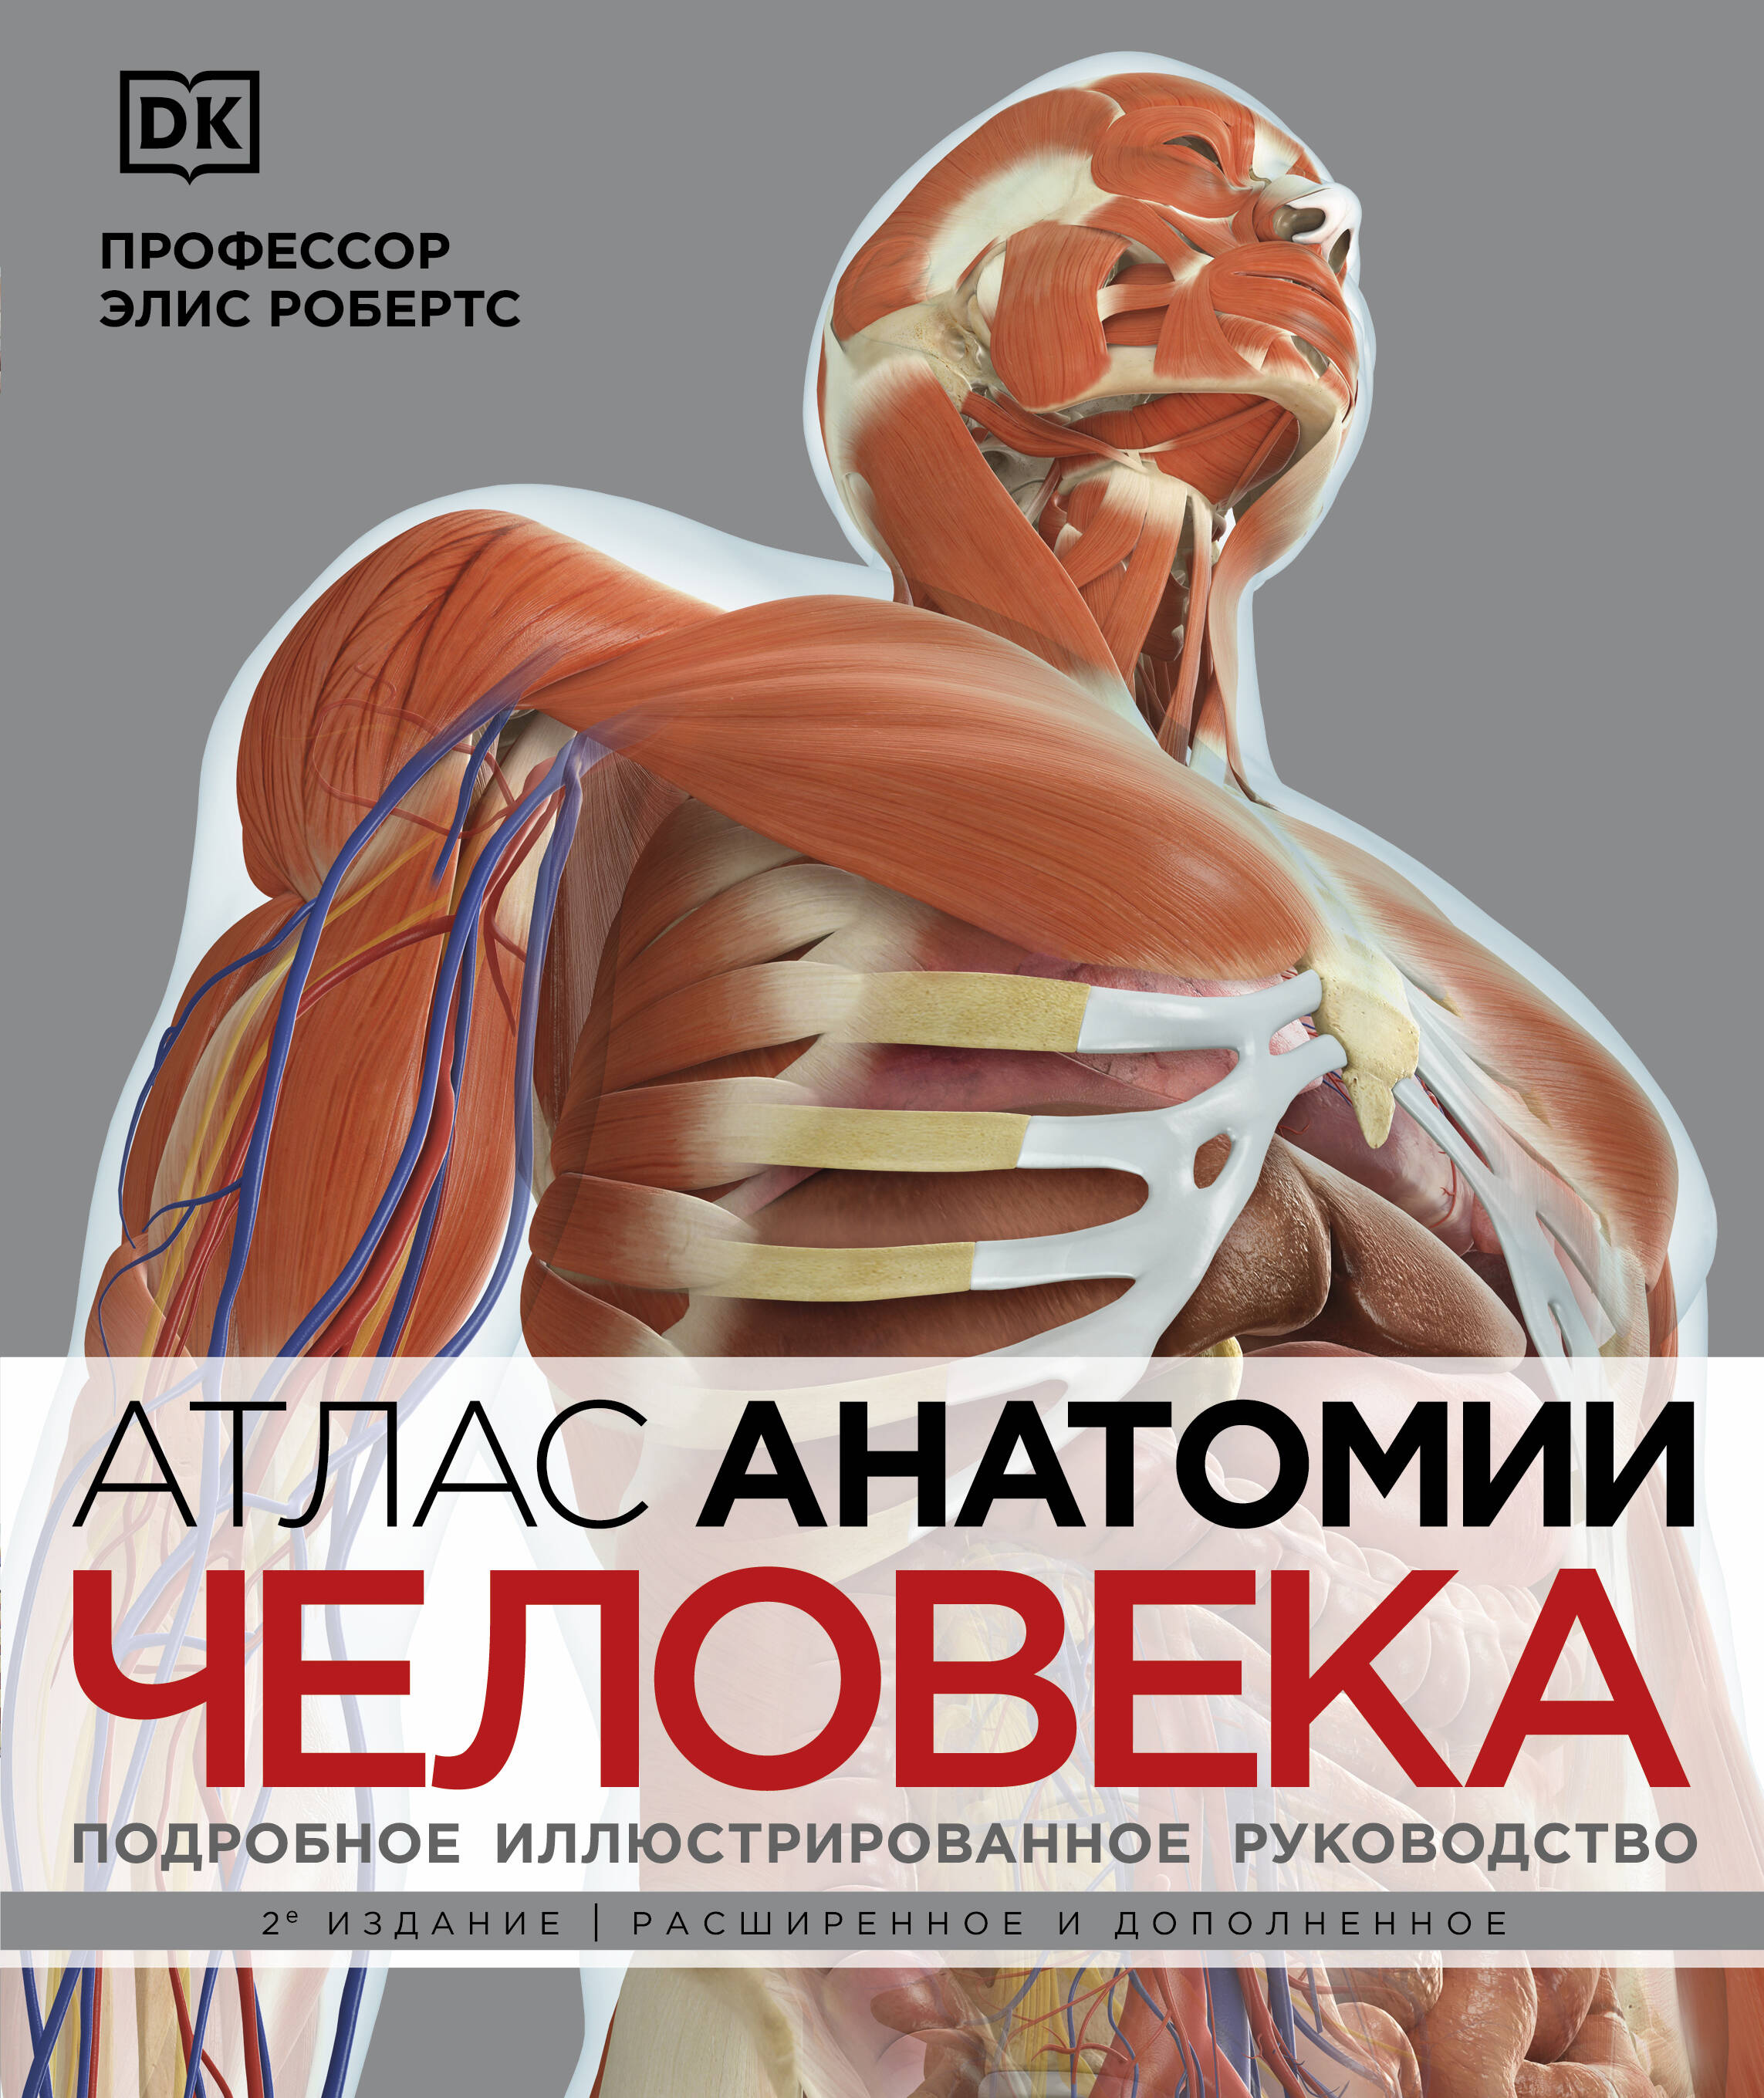 Робертс Элис Атлас анатомии человека. Подробное иллюстрированное руководство робертс элис происхождение человека эволюция